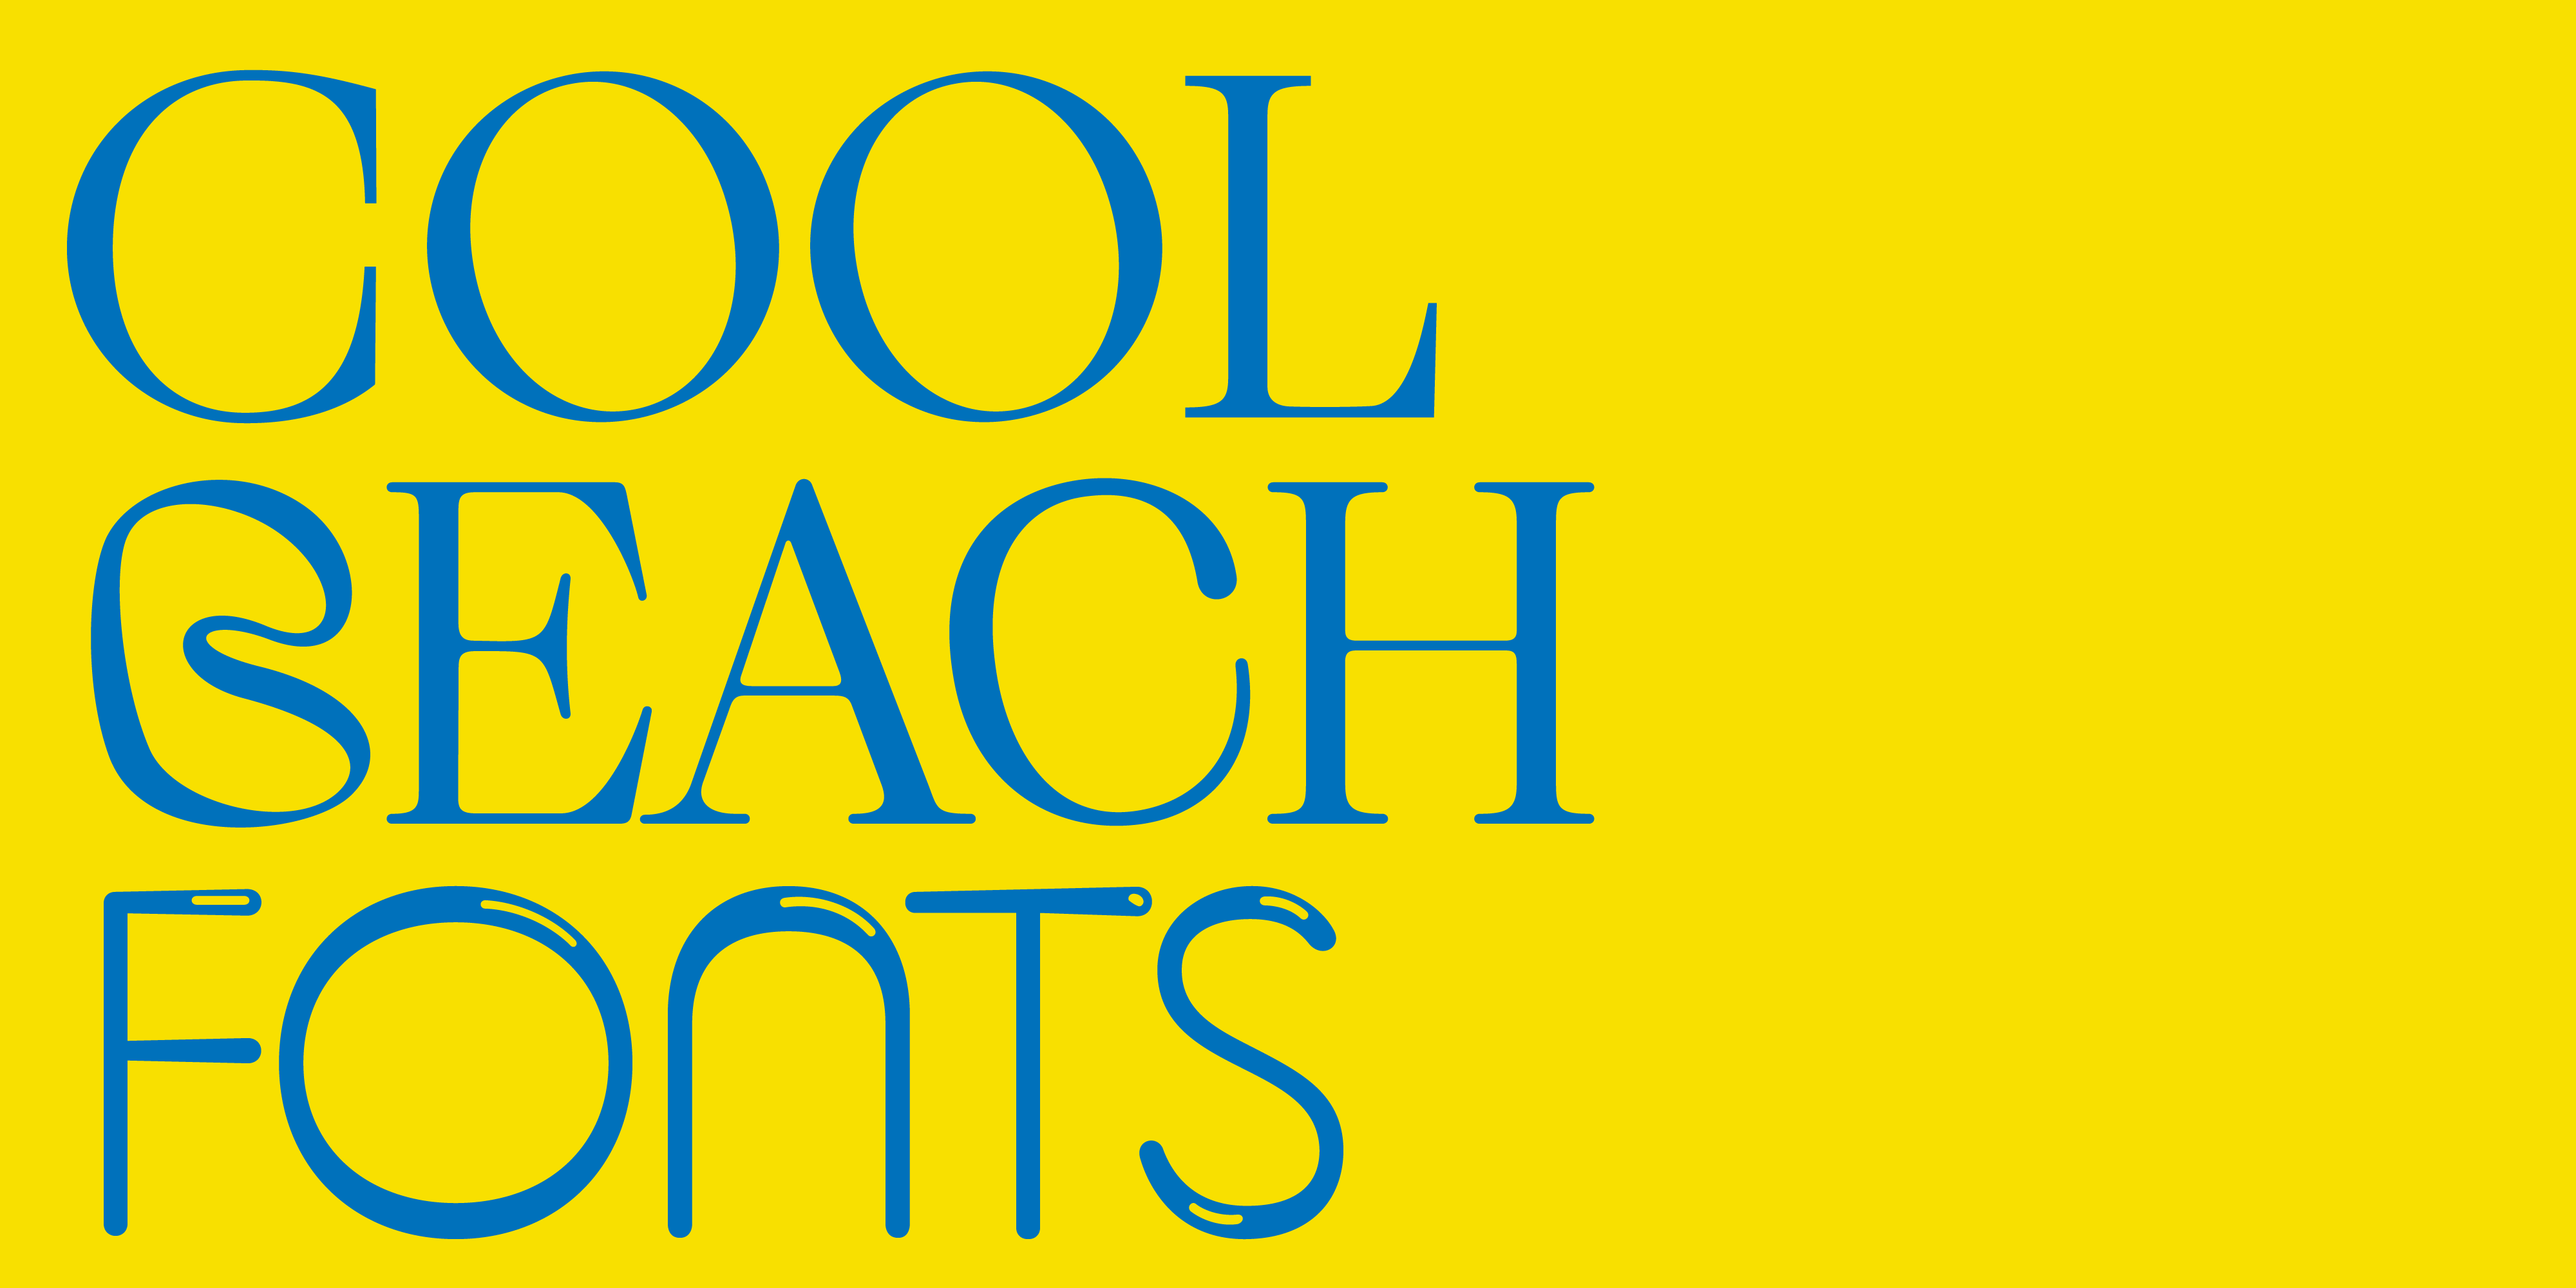 cool beach fonts